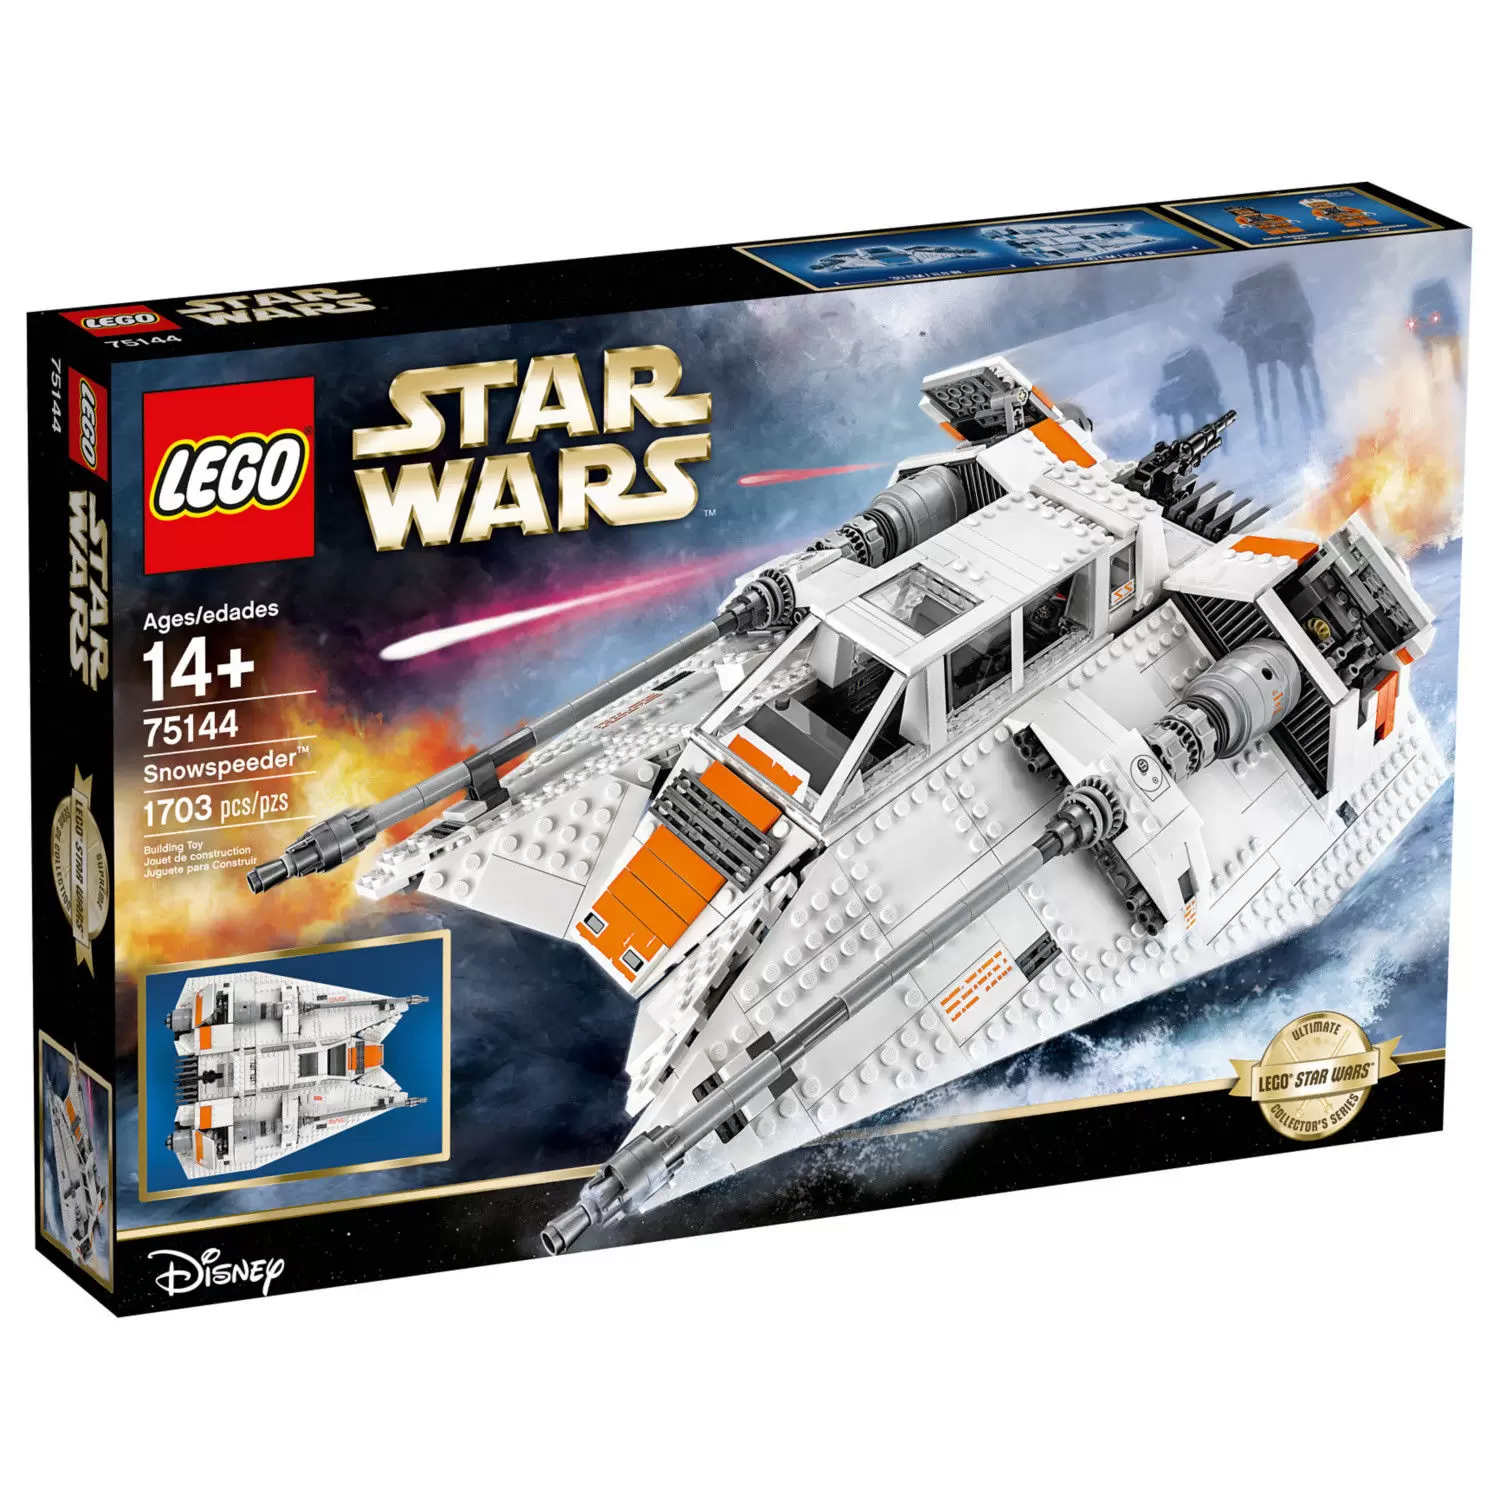 LEGO Star Wars - Snowspeeder (Ultimate COllector Series)